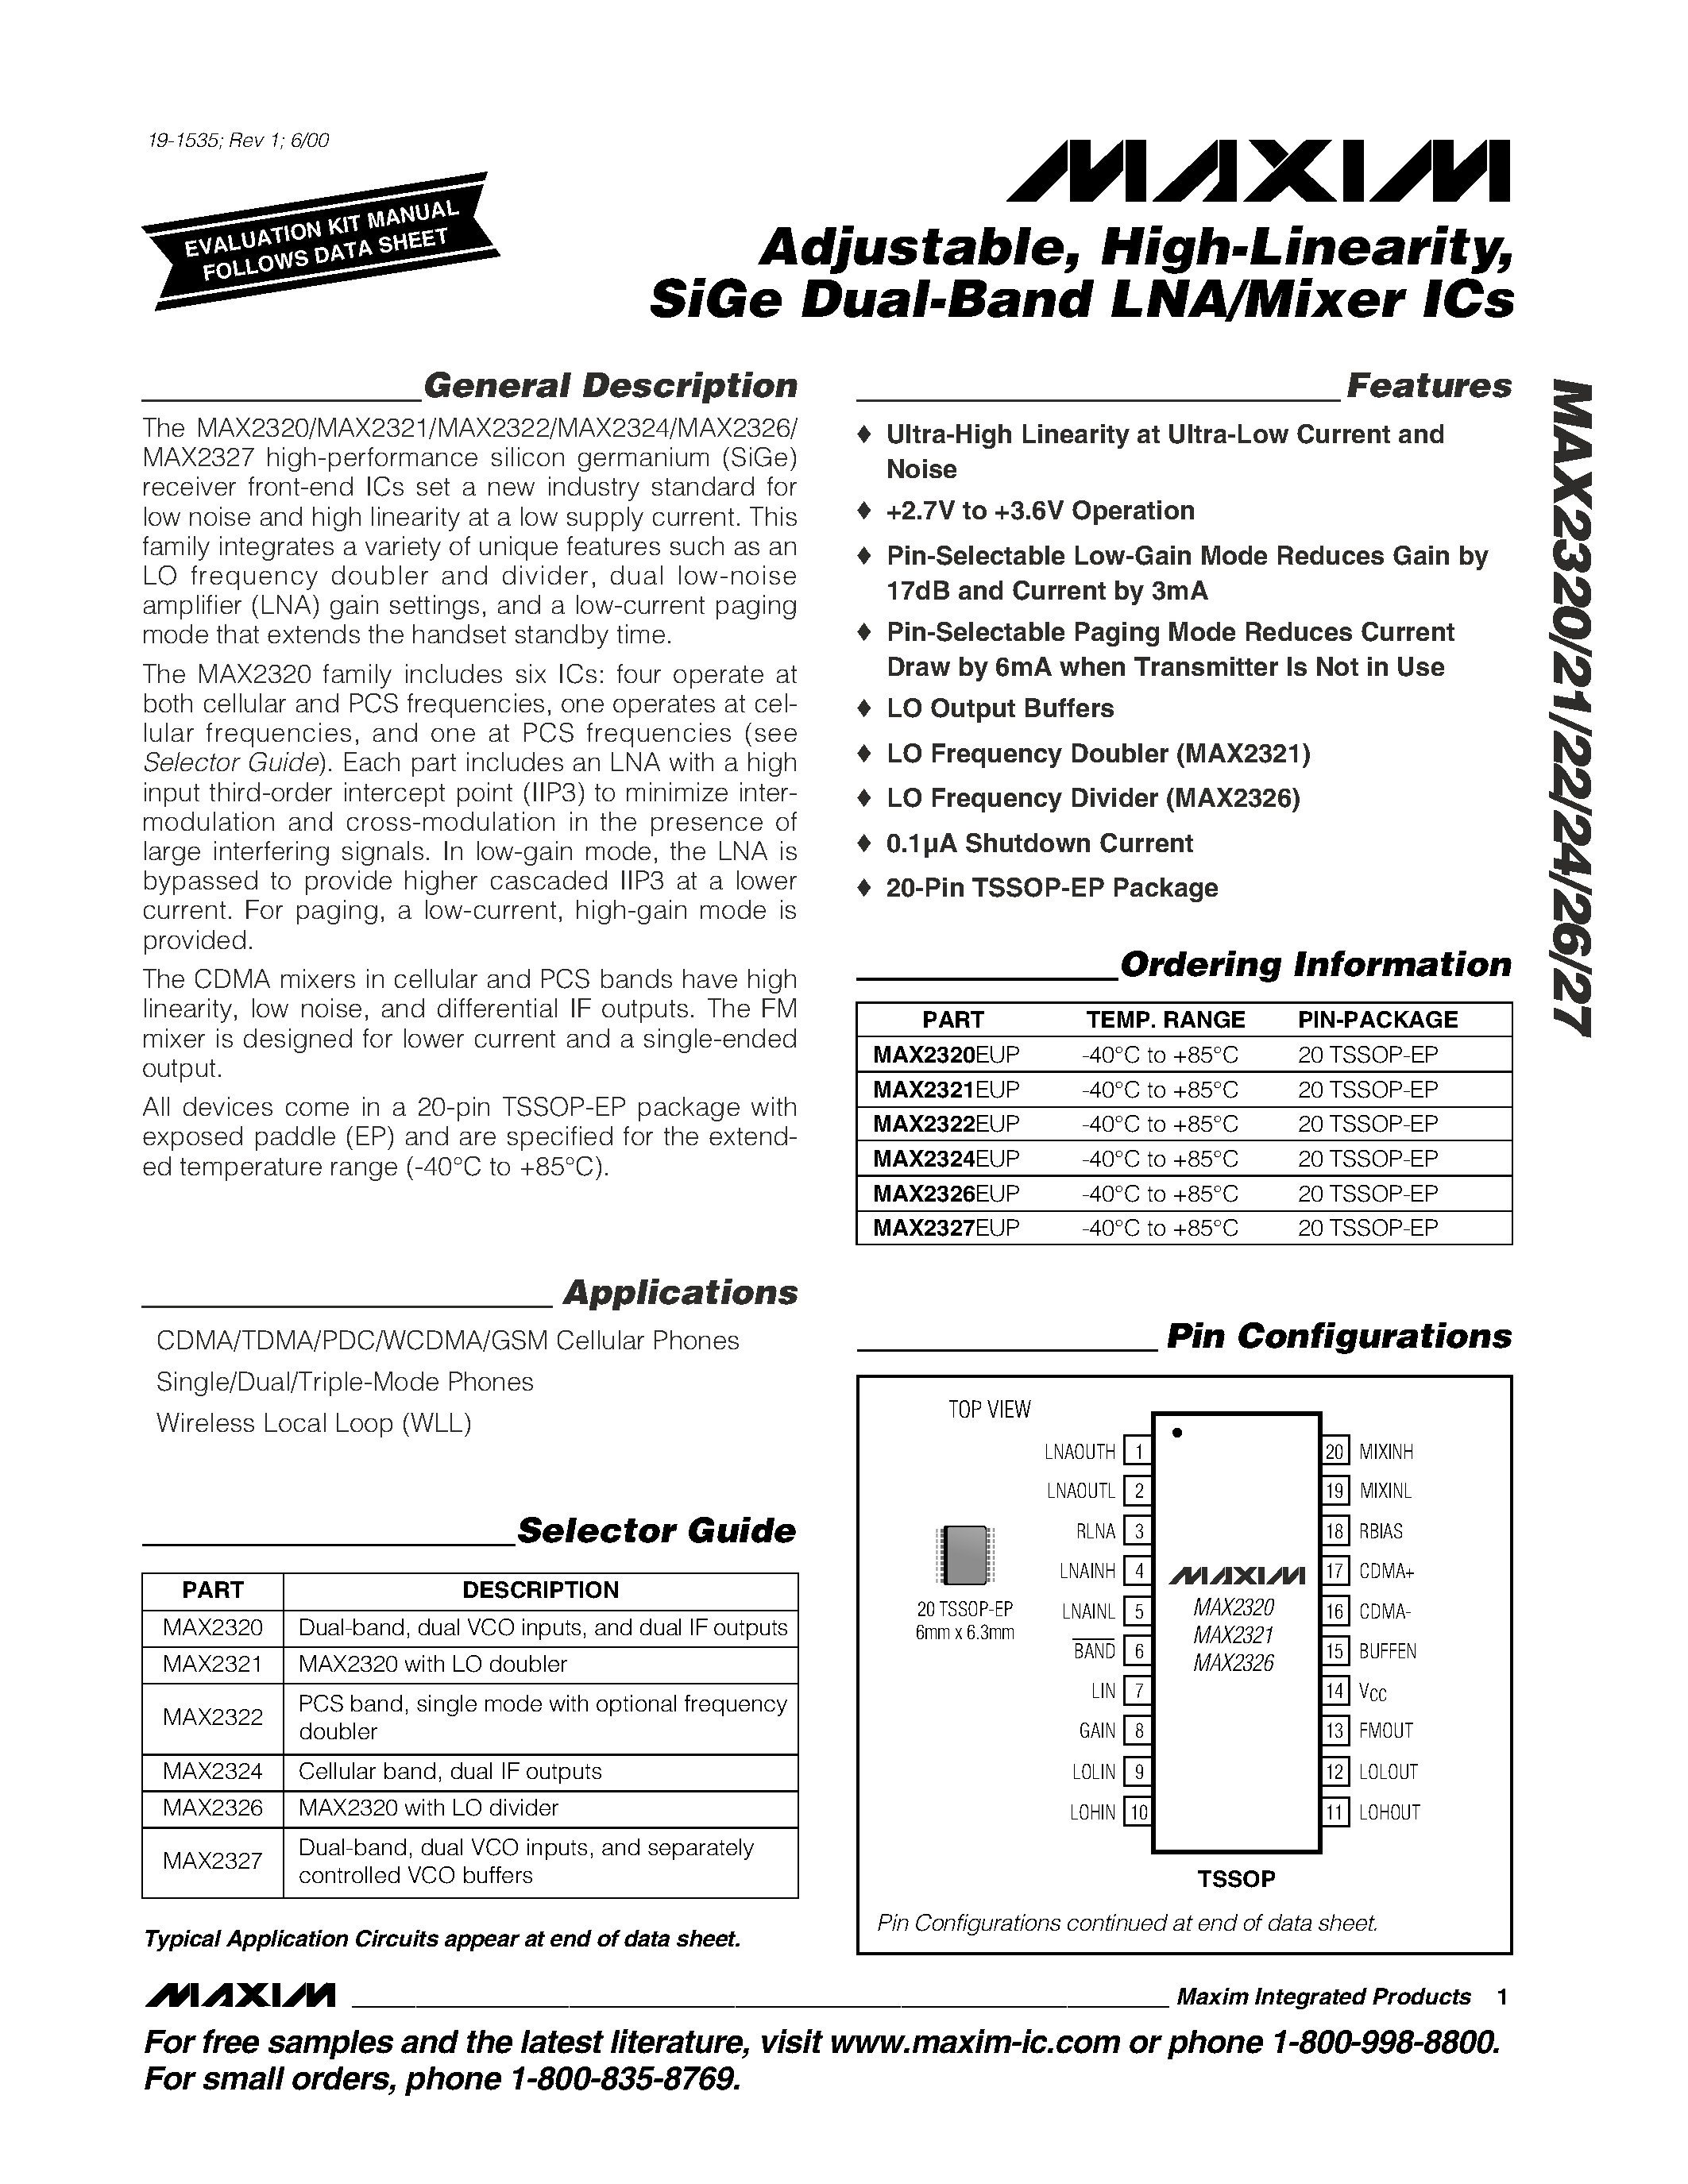 Даташит MAX2326 - Adjustable / High-Linearity / SiGe Dual-Band LNA/Mixer ICs страница 1